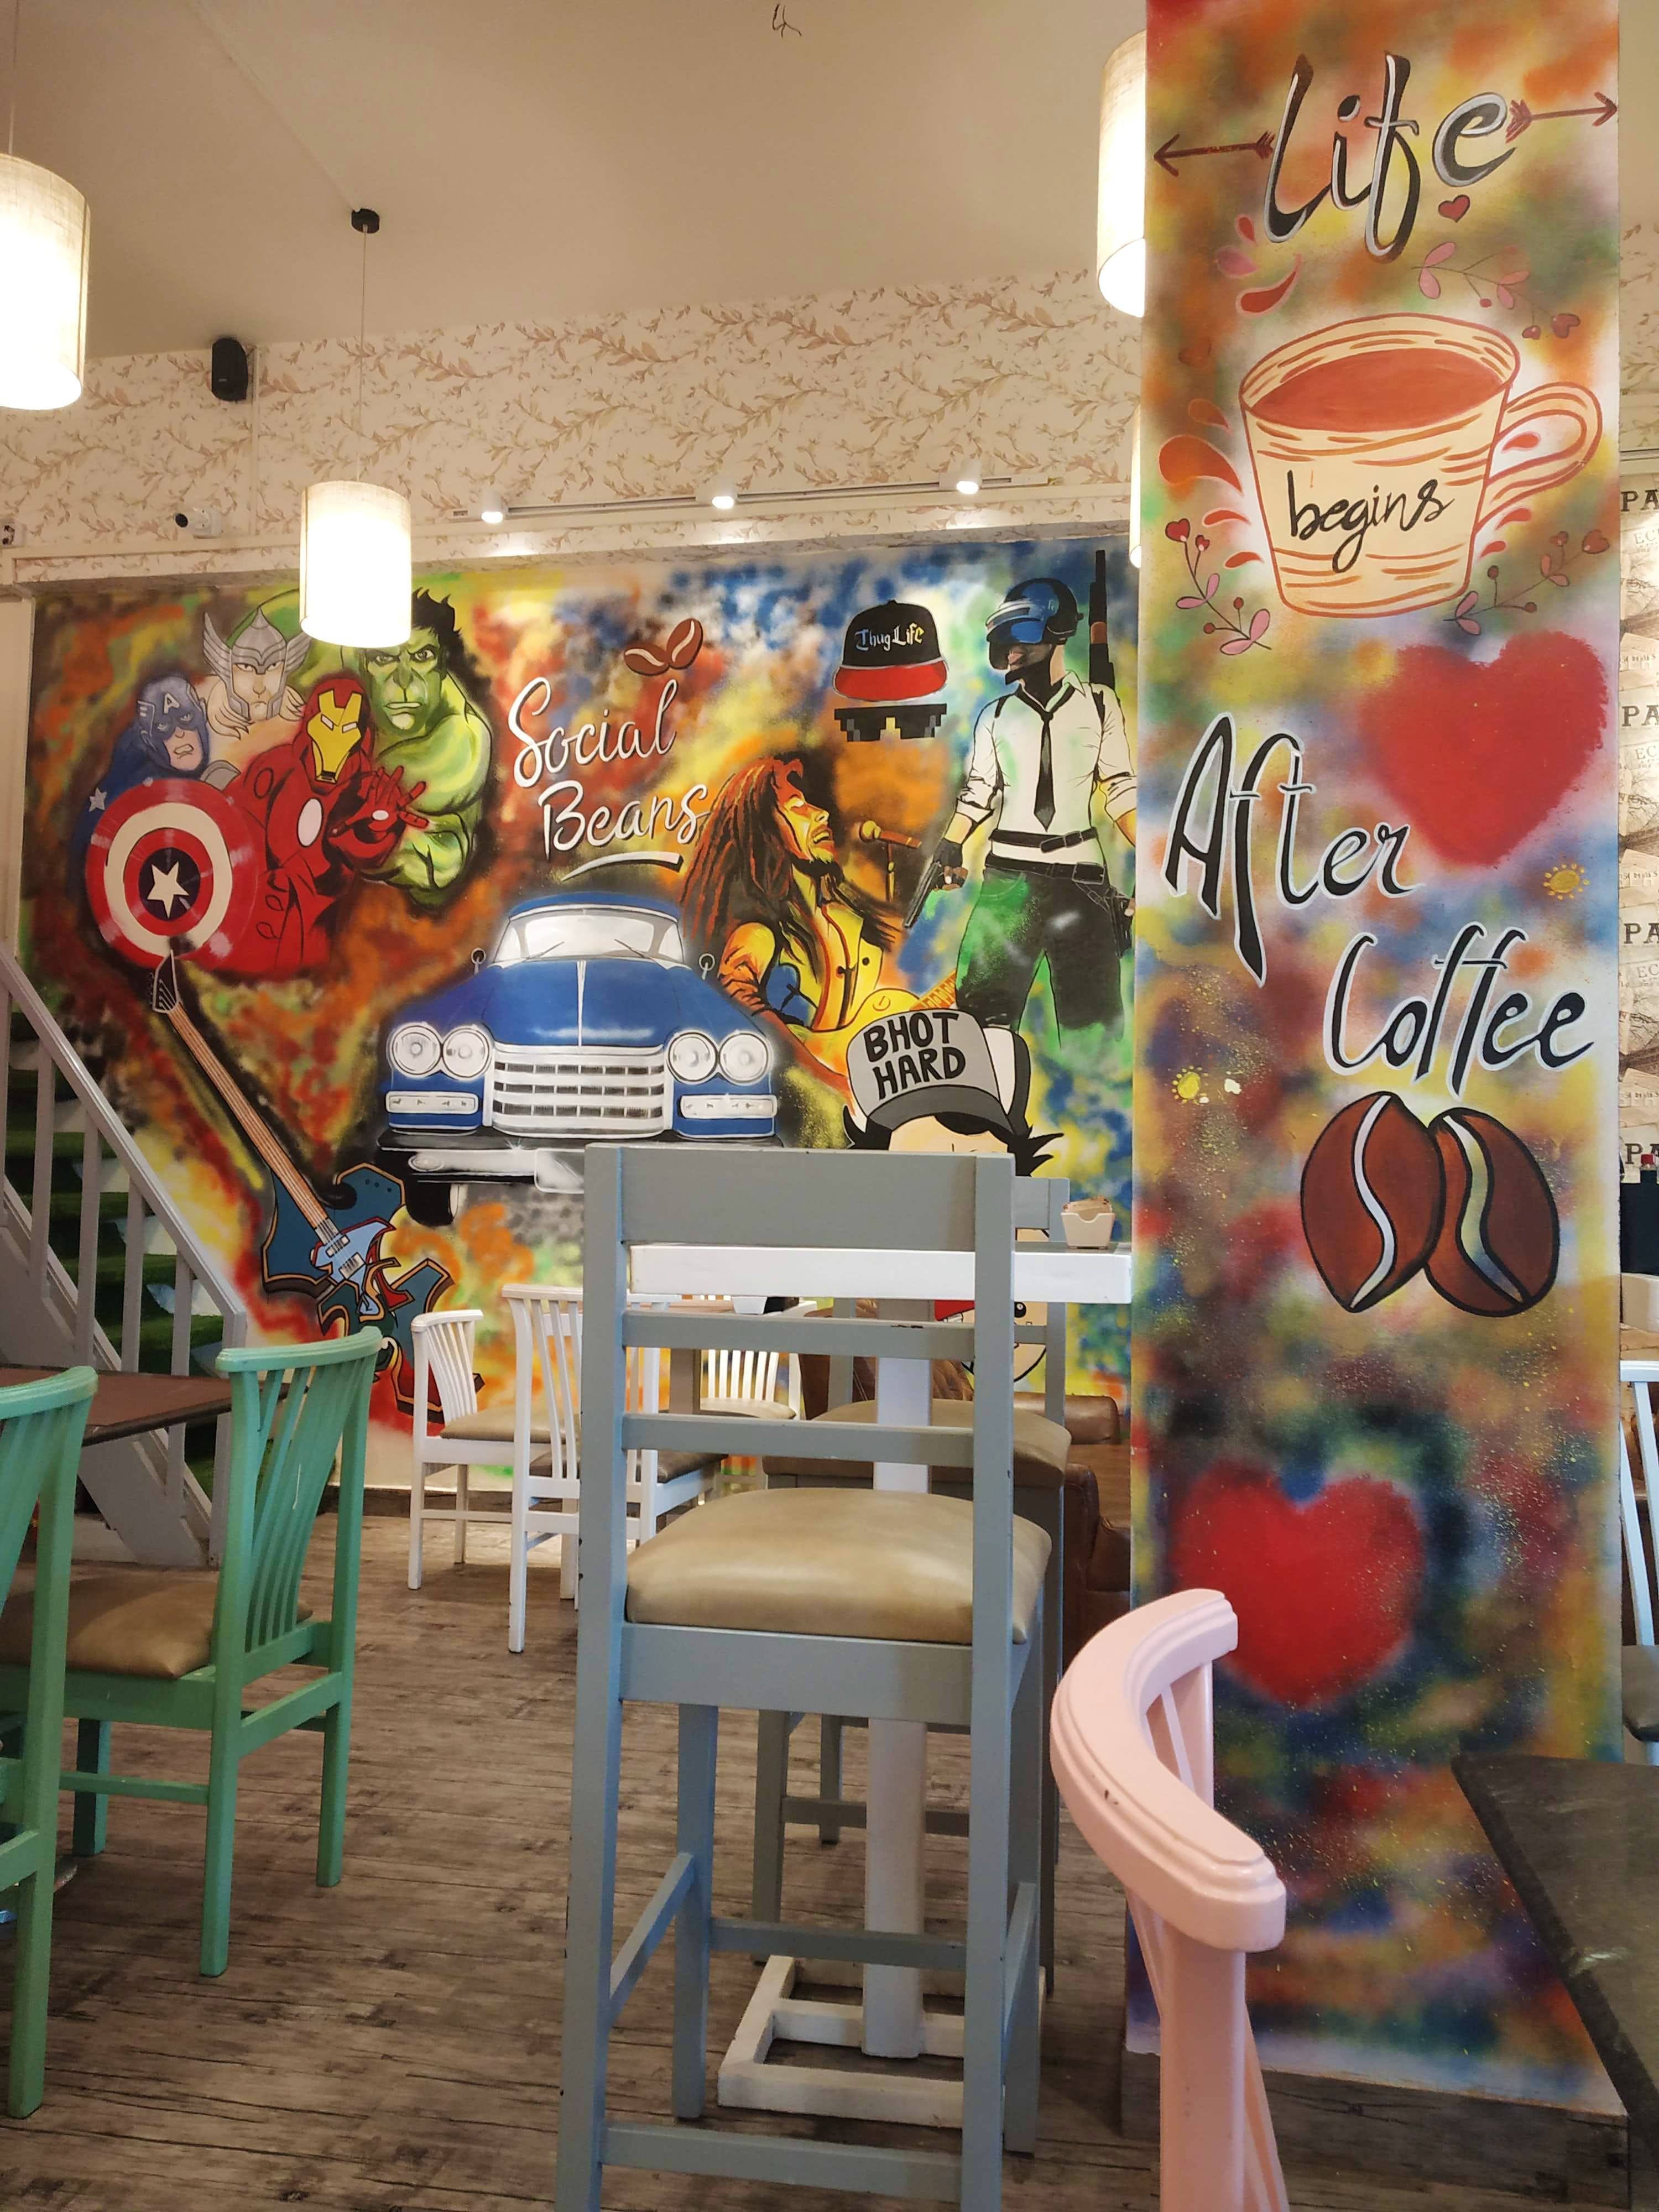 Wall,Art,Interior design,Mural,Street art,Snack,Graffiti,Fast food,Building,Restaurant